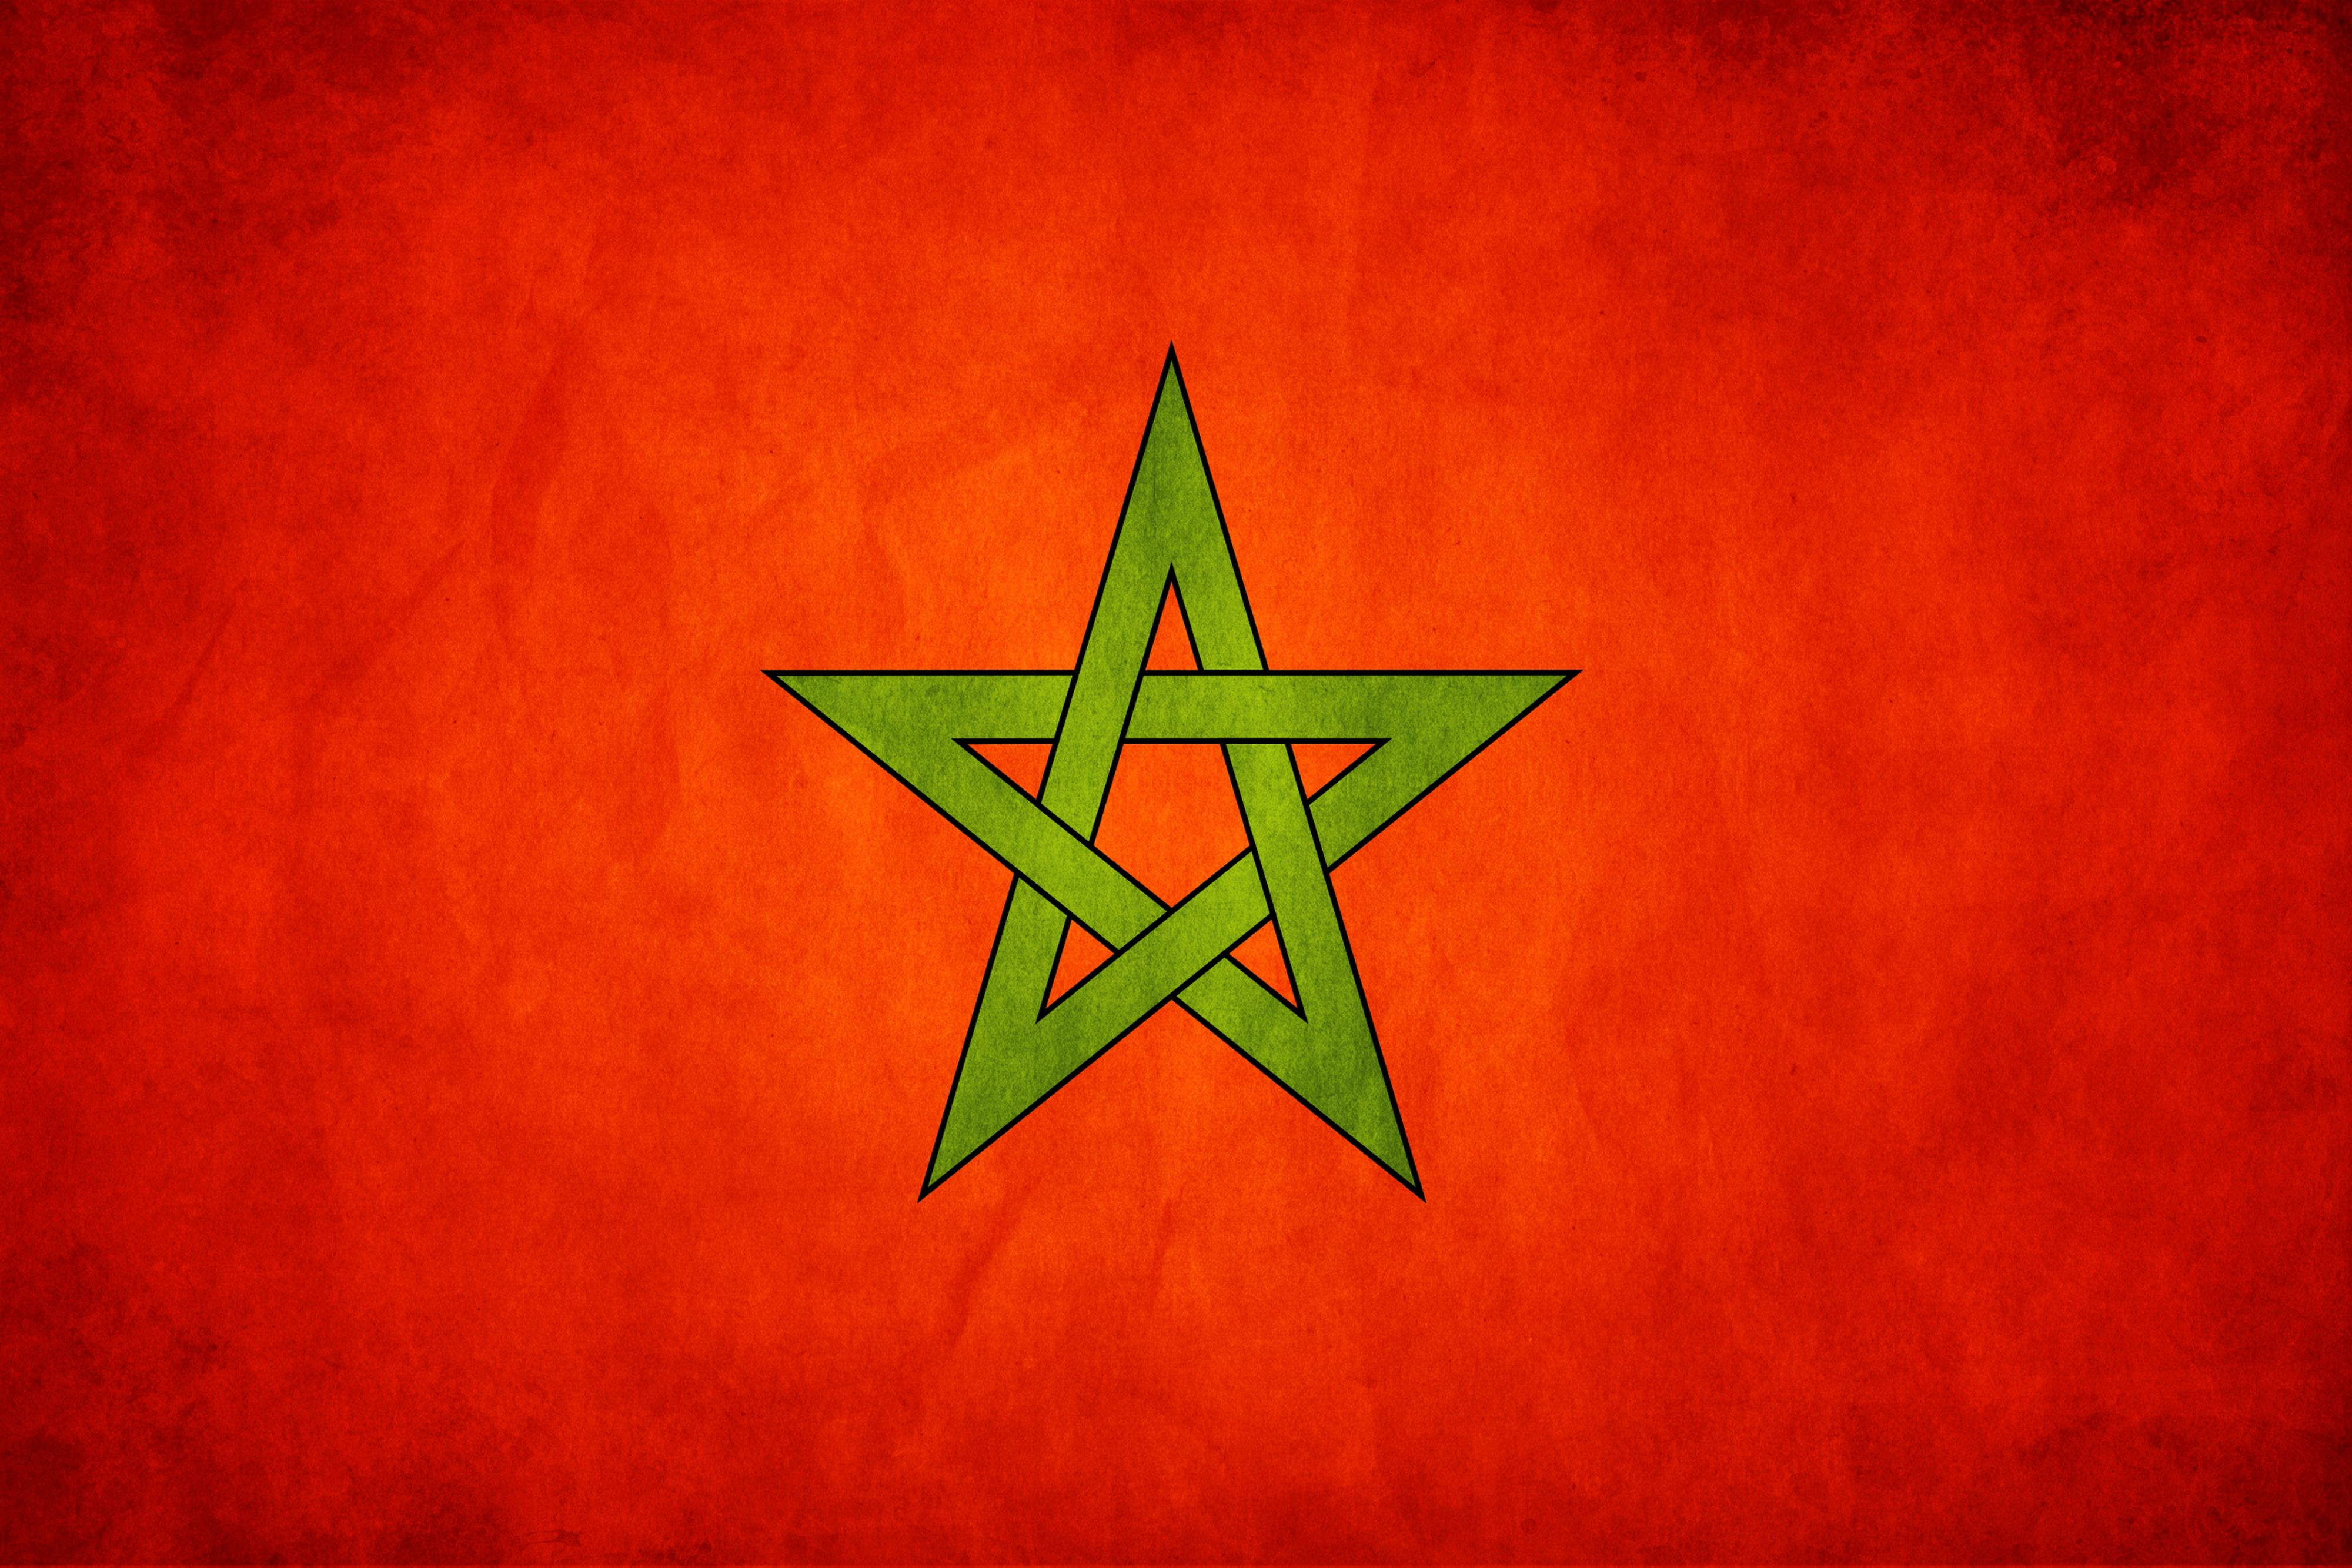 wallpaper full hd maroc - Recherche Google | Maroc | Pinterest | Sunset